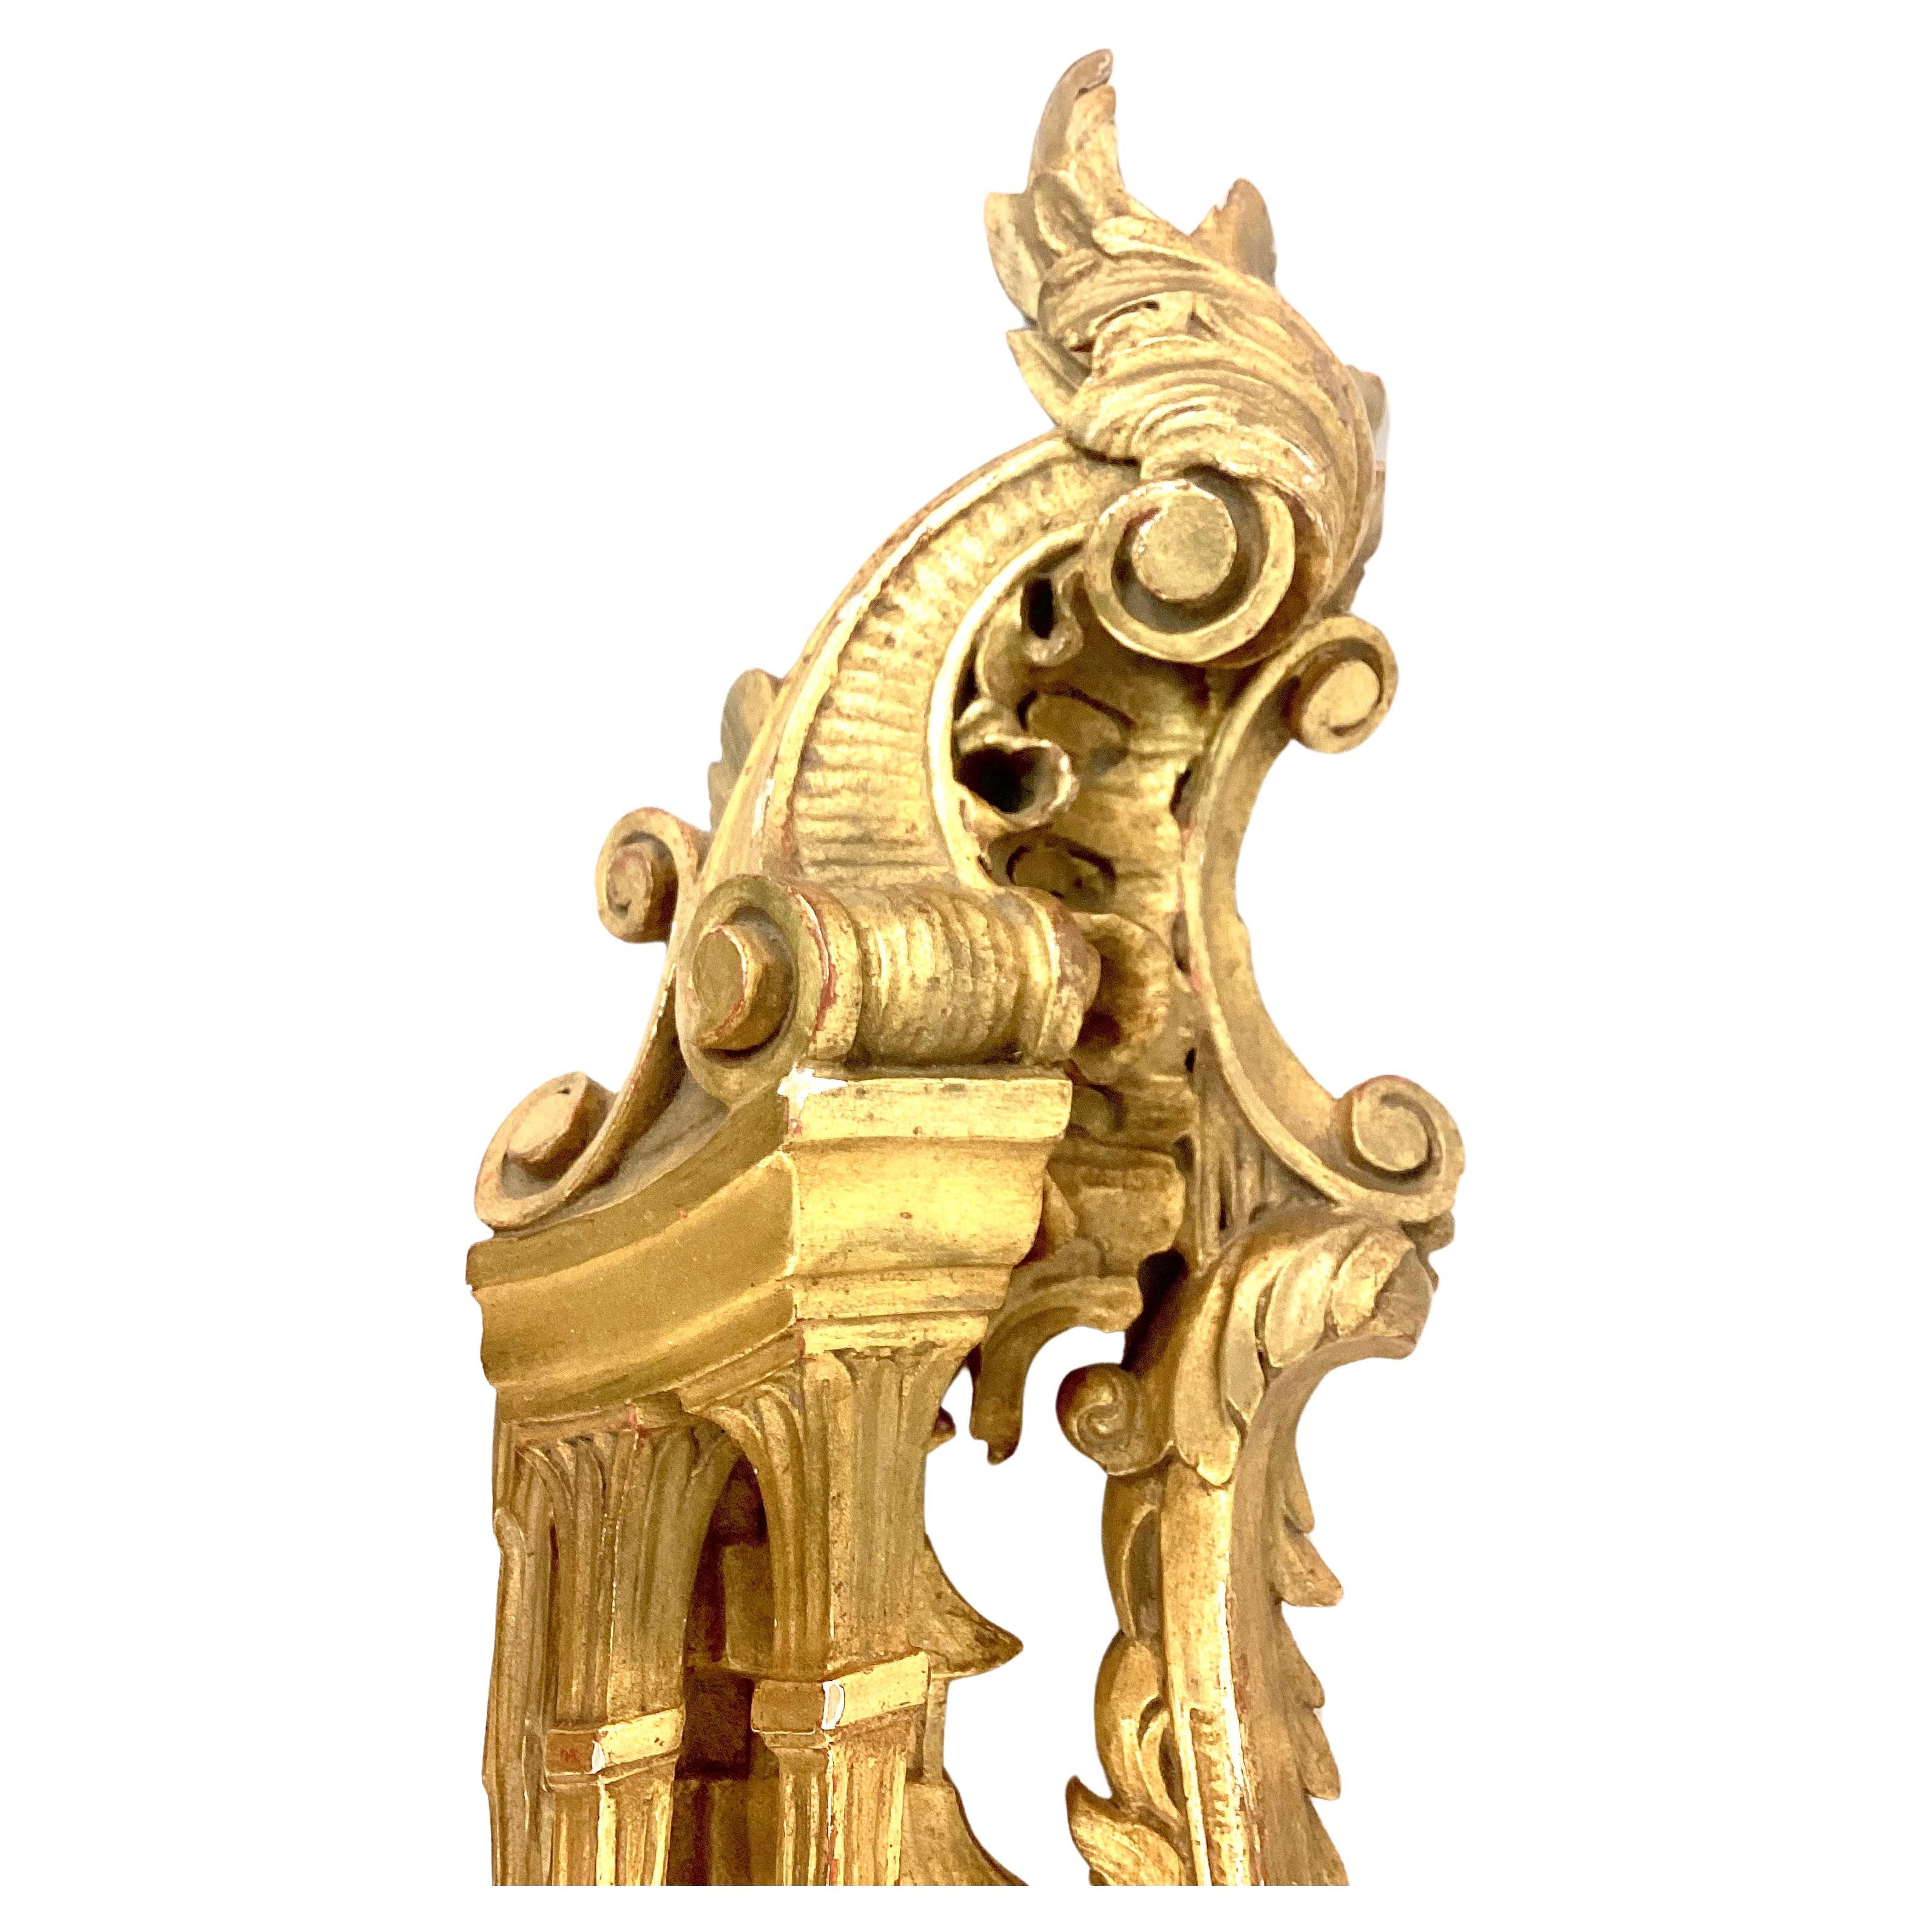 Fragment architectural en bois doré Chippendale chinois du 19e siècle. La pièce est composée d'un motif de feuilles et de volutes avec des accents chinois au centre. Sculptée à la main de façon complexe. Le dos est muni d'un cintre.